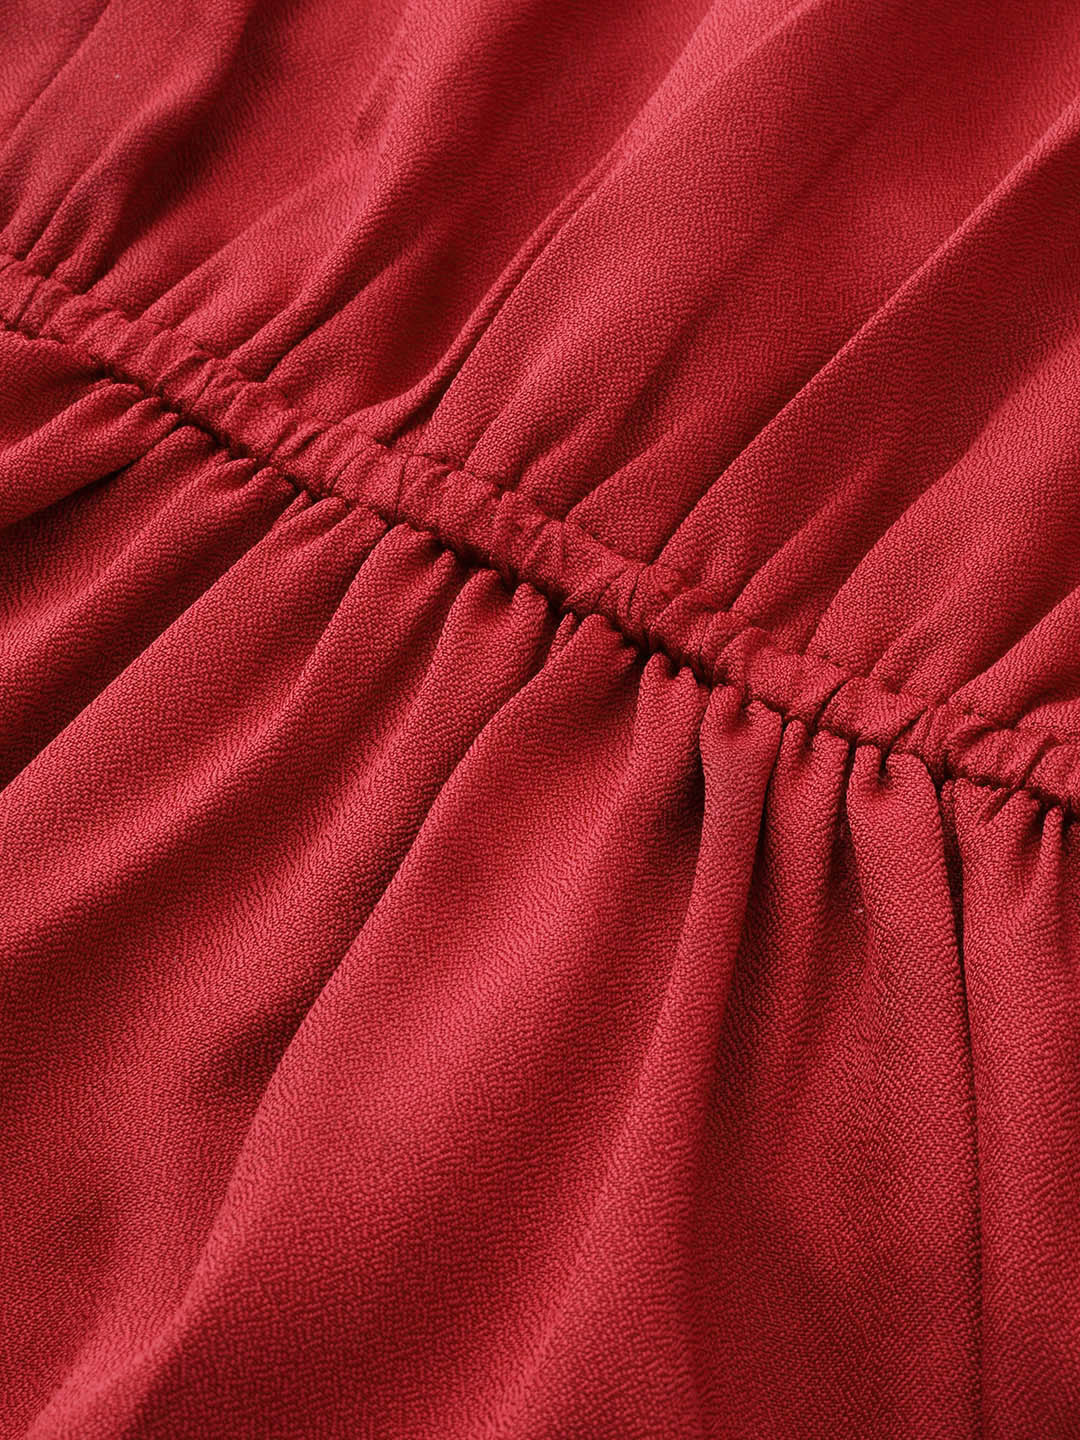 महिलाओं के लिए रस्ट रेड सॉलिड मैक्सी ड्रेस